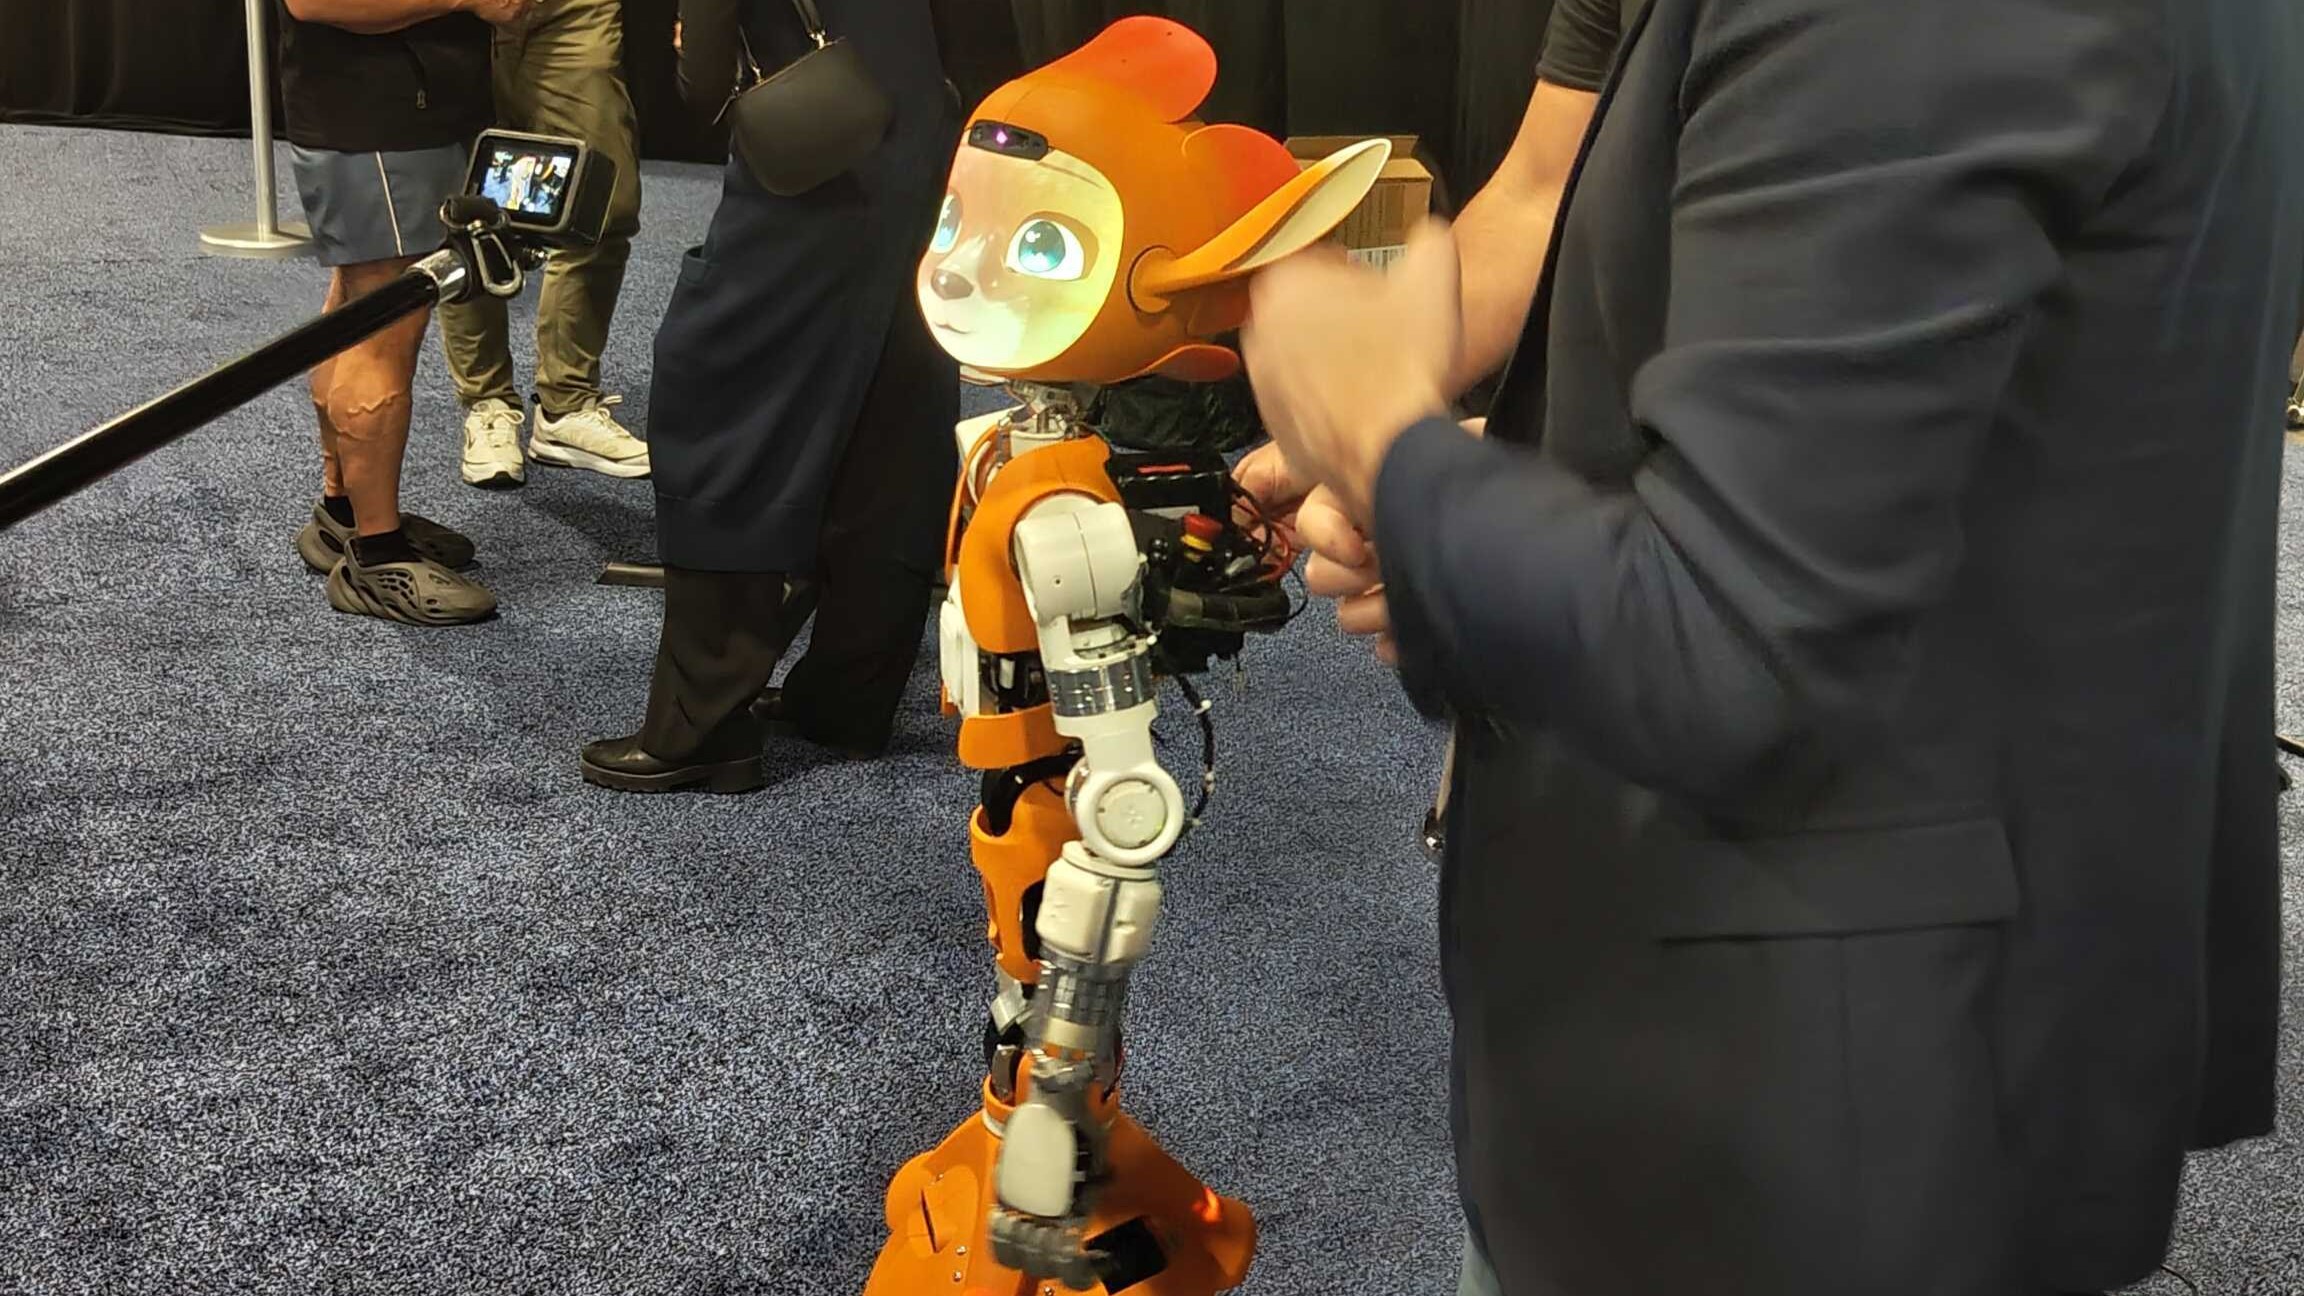 Miroki Robot at CES